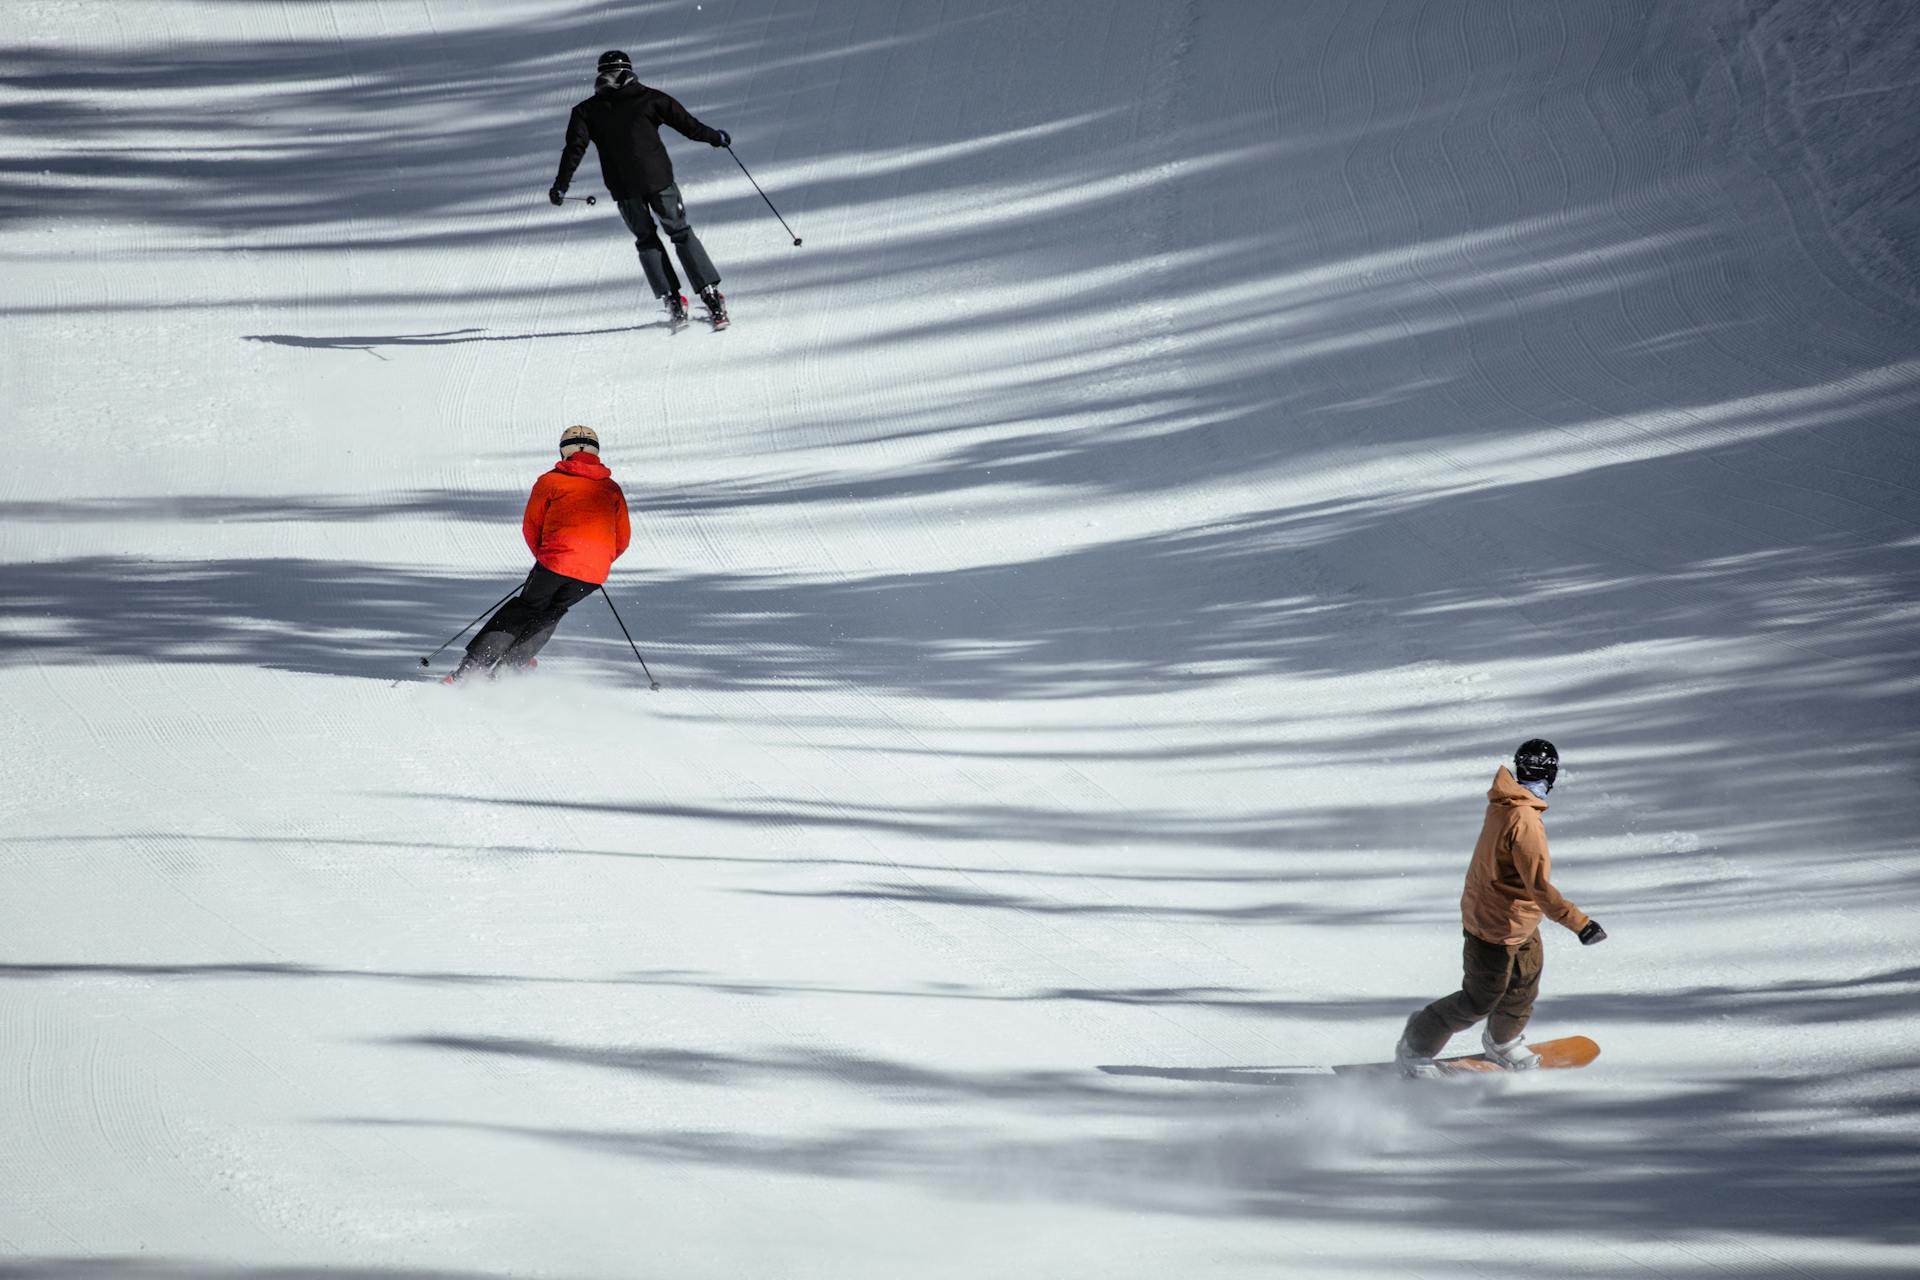 skiers and snowboarder enjoying ski slope